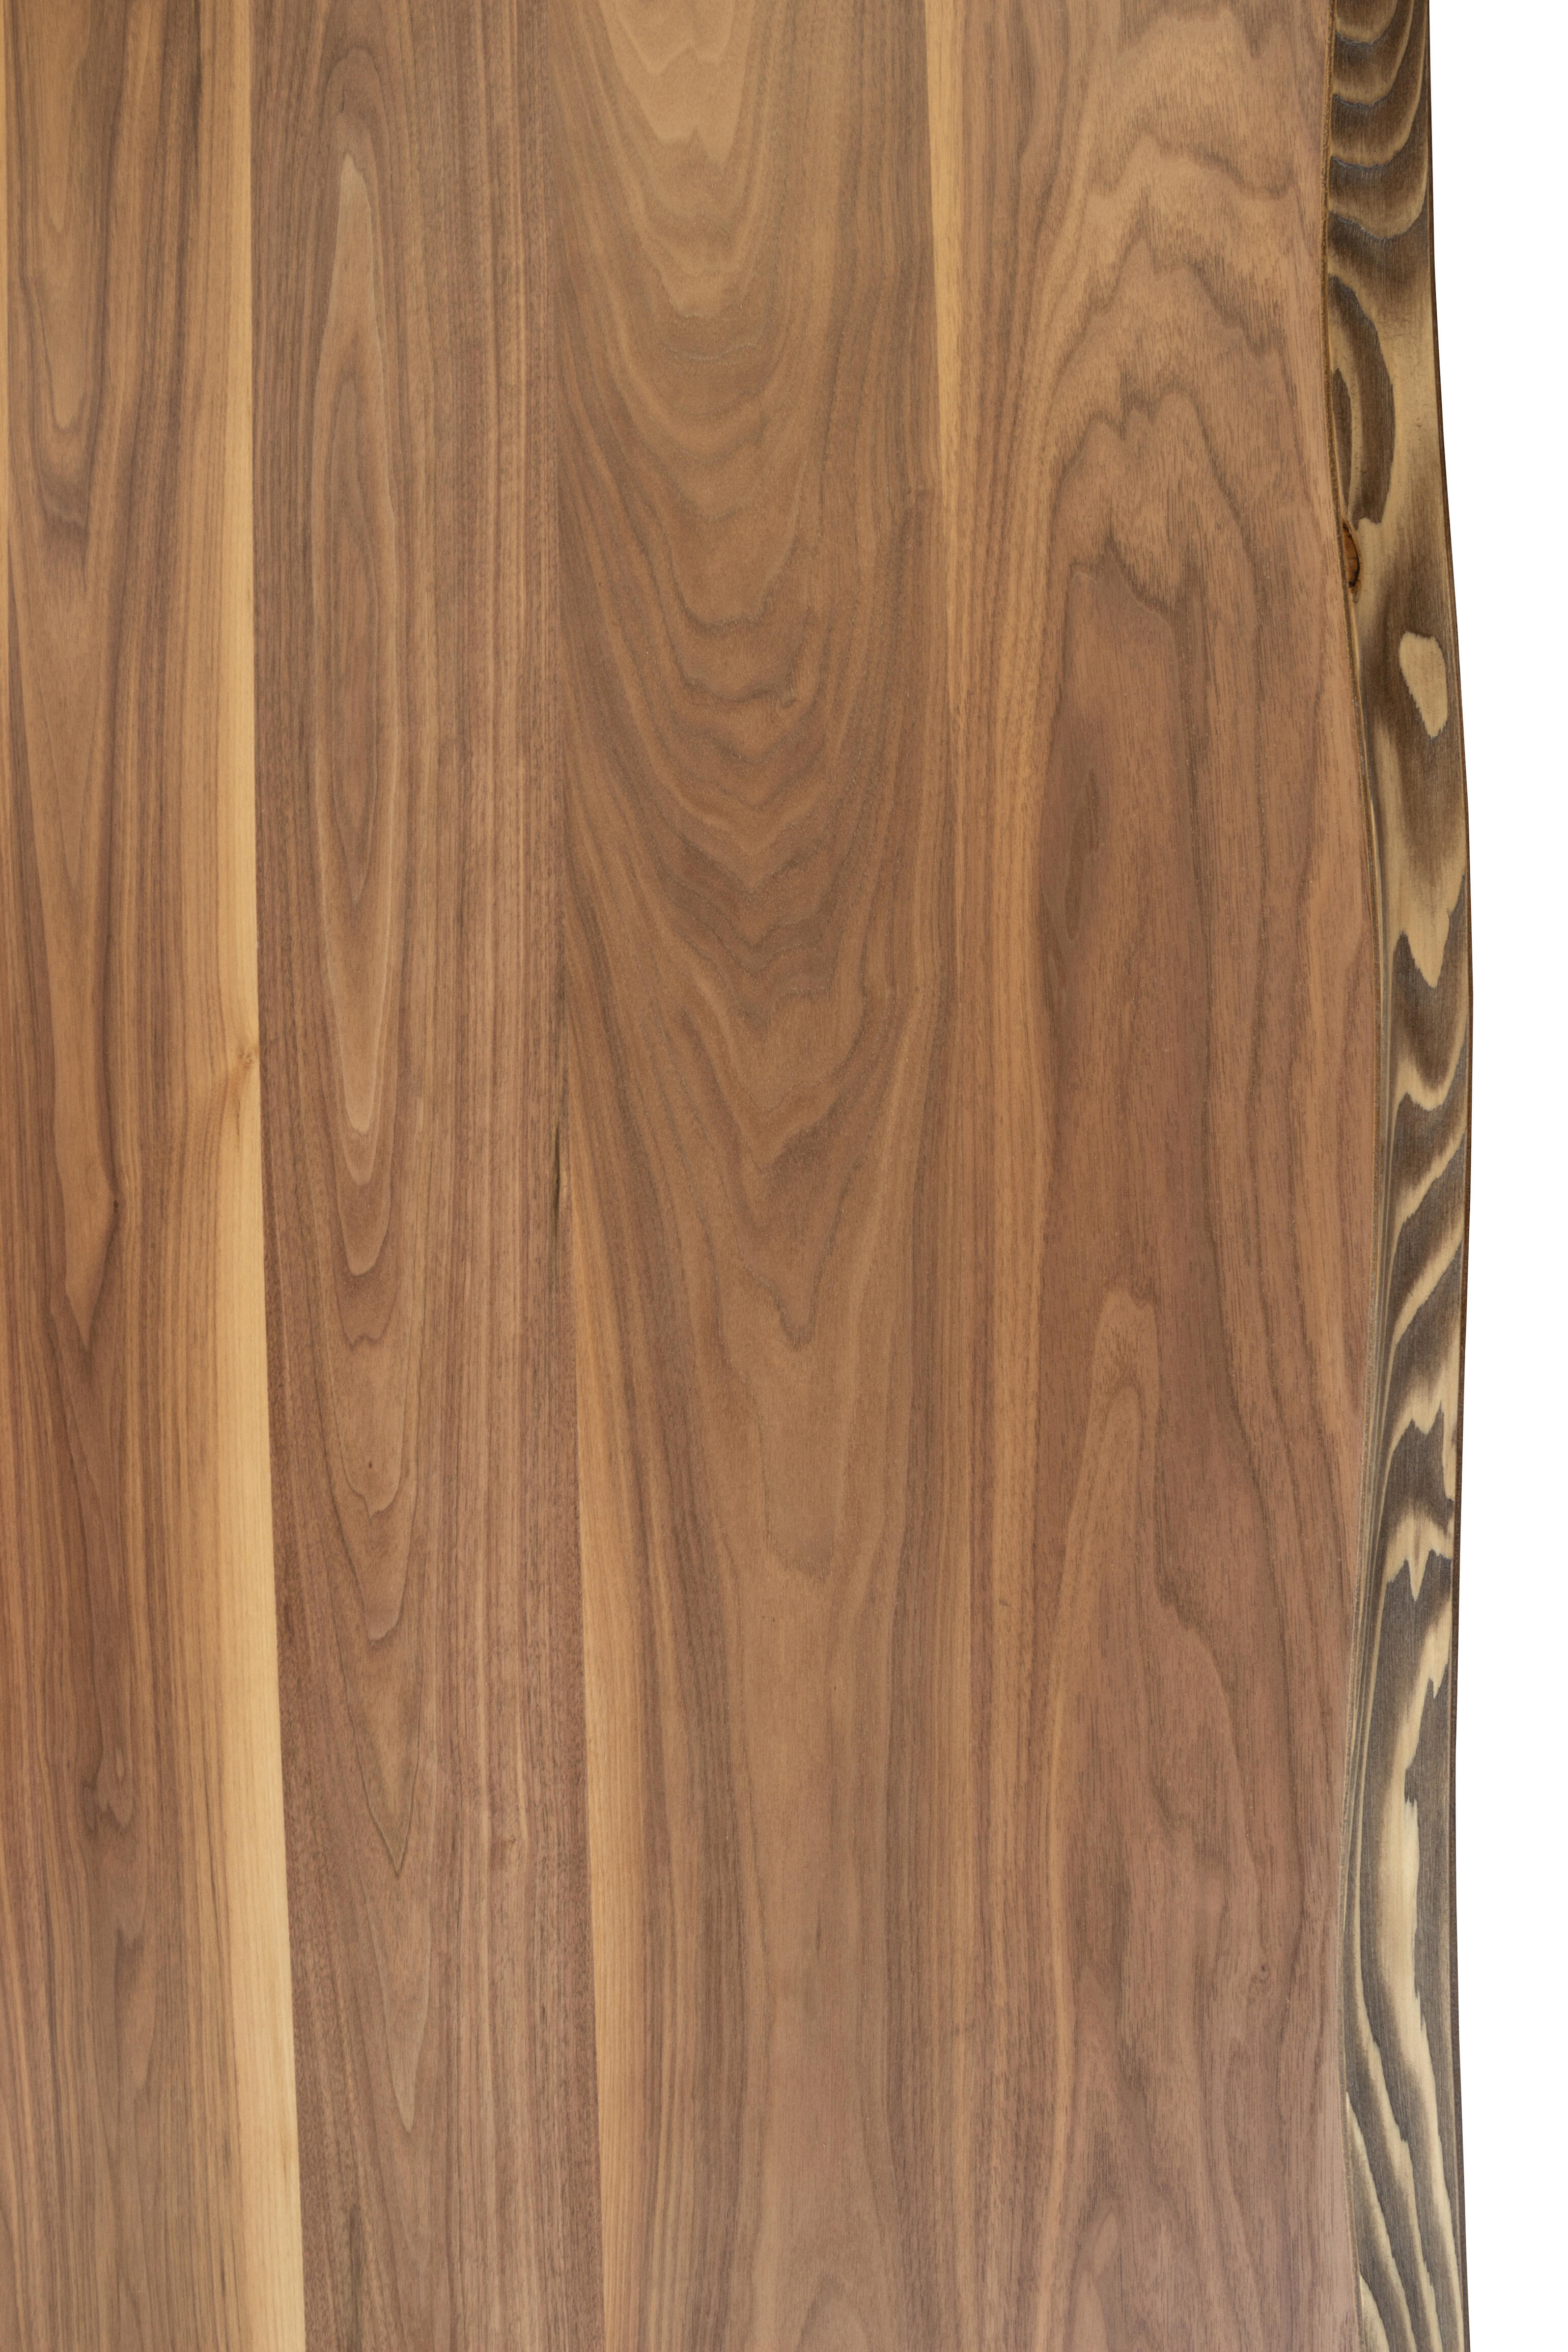 Tablero para mesa rechapado en madera de nogal 45x120x4,8 cm lados forma árbol